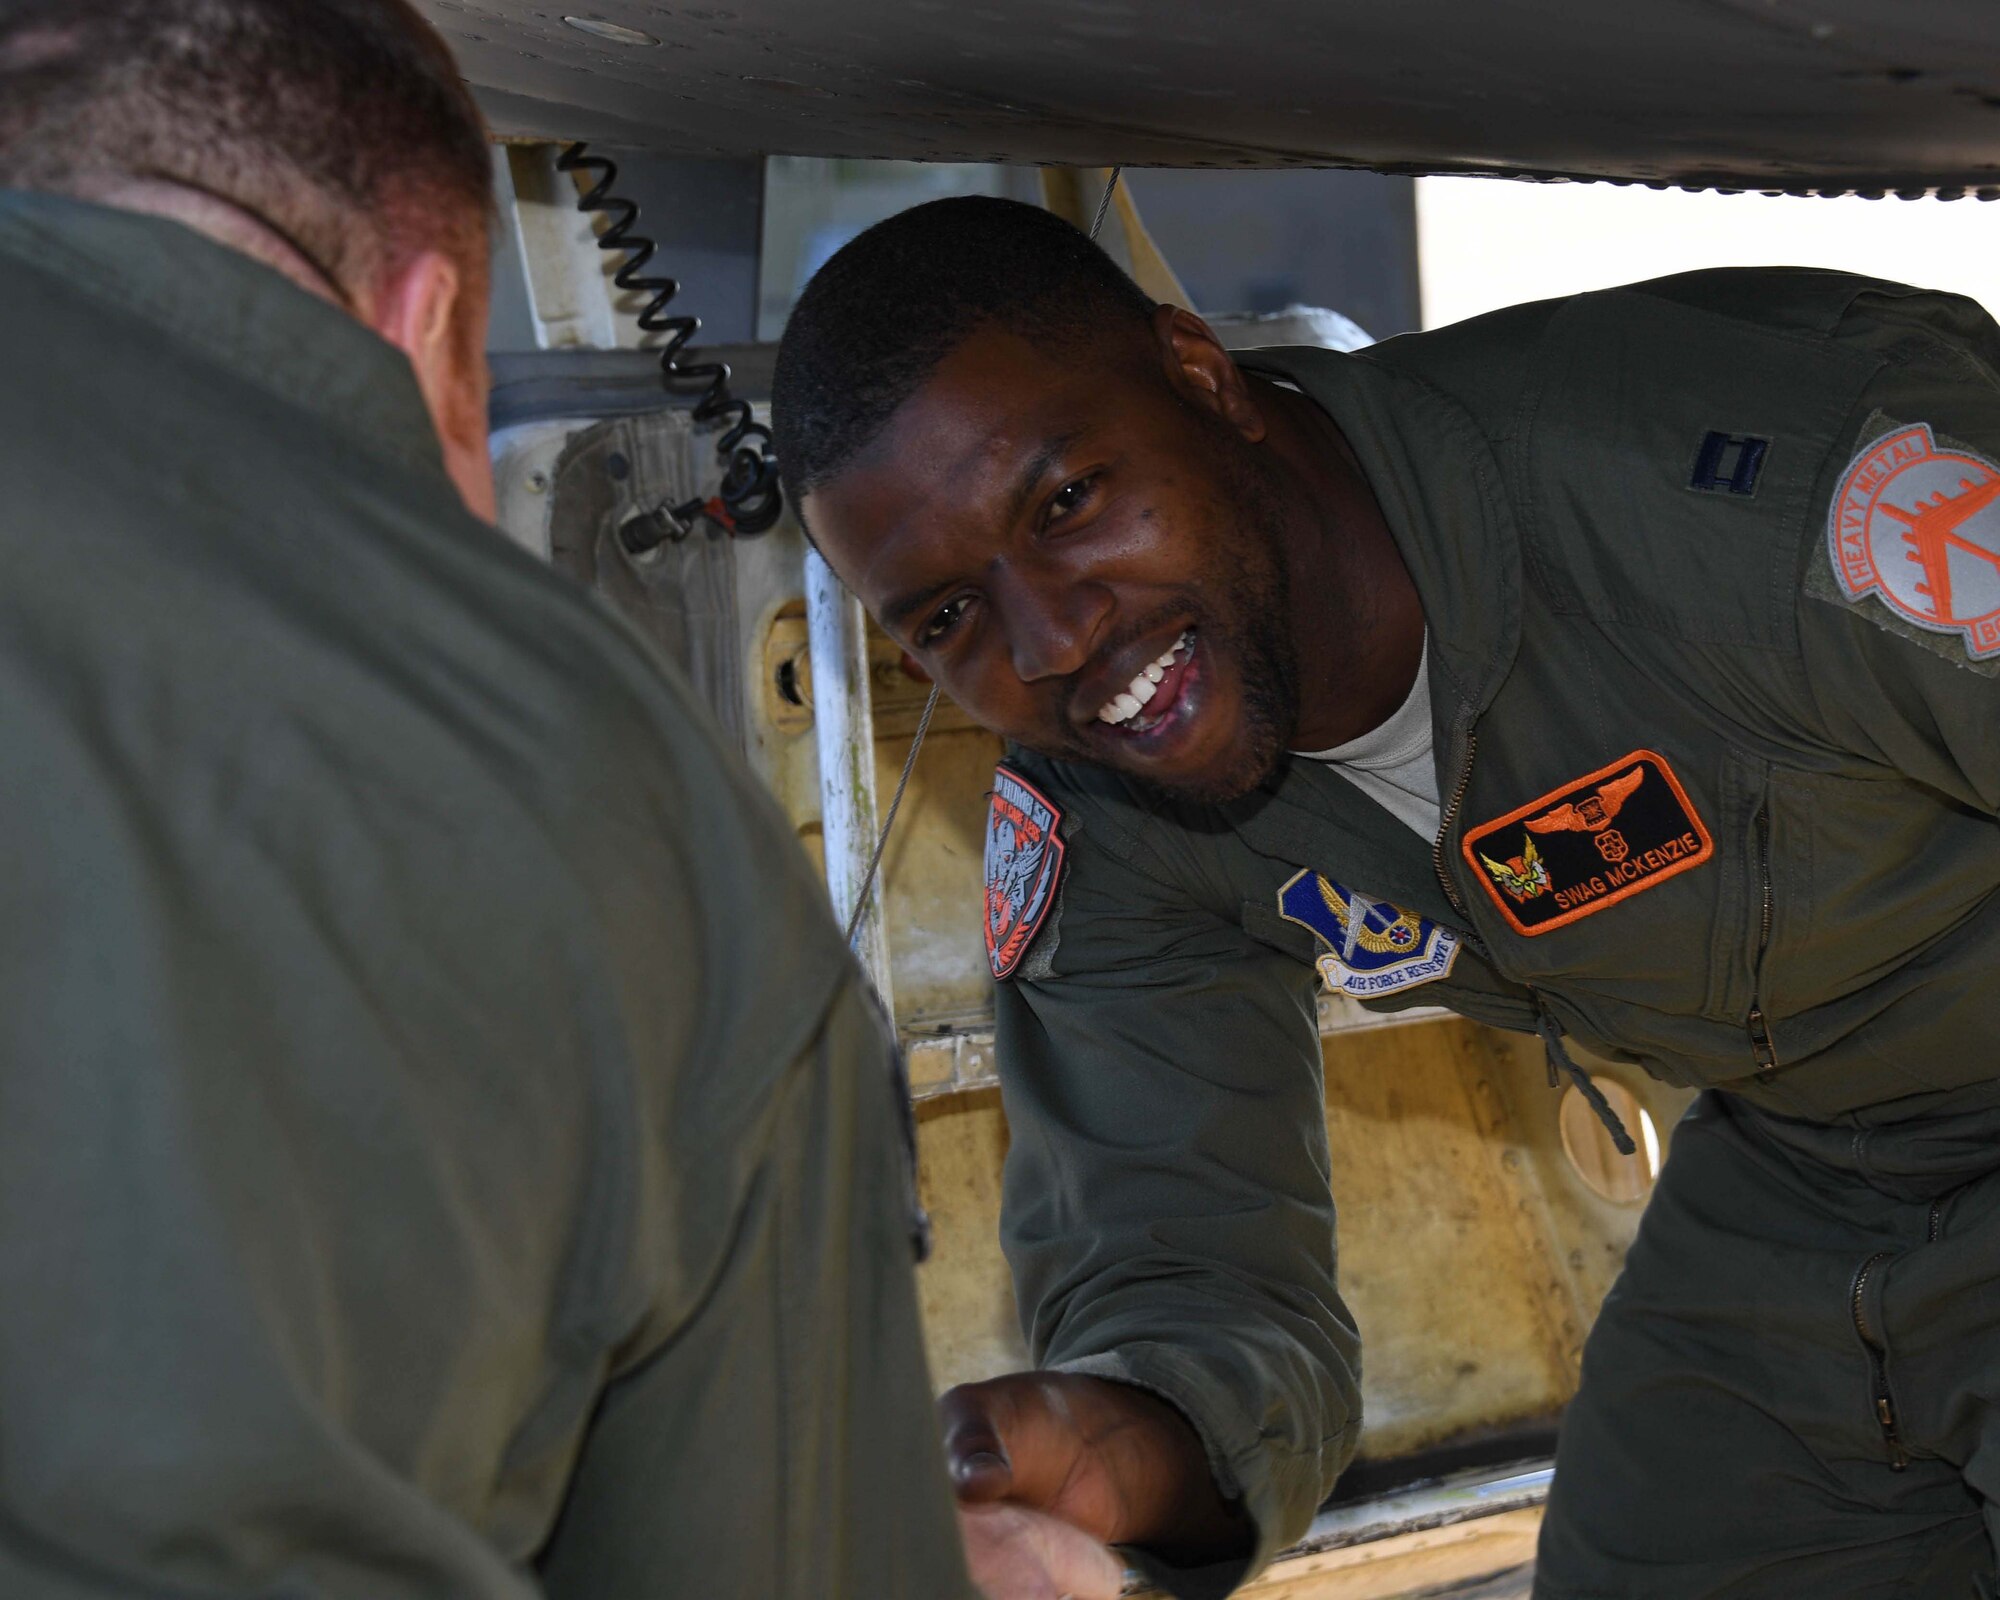 An Airman smiles from below an aircraft.